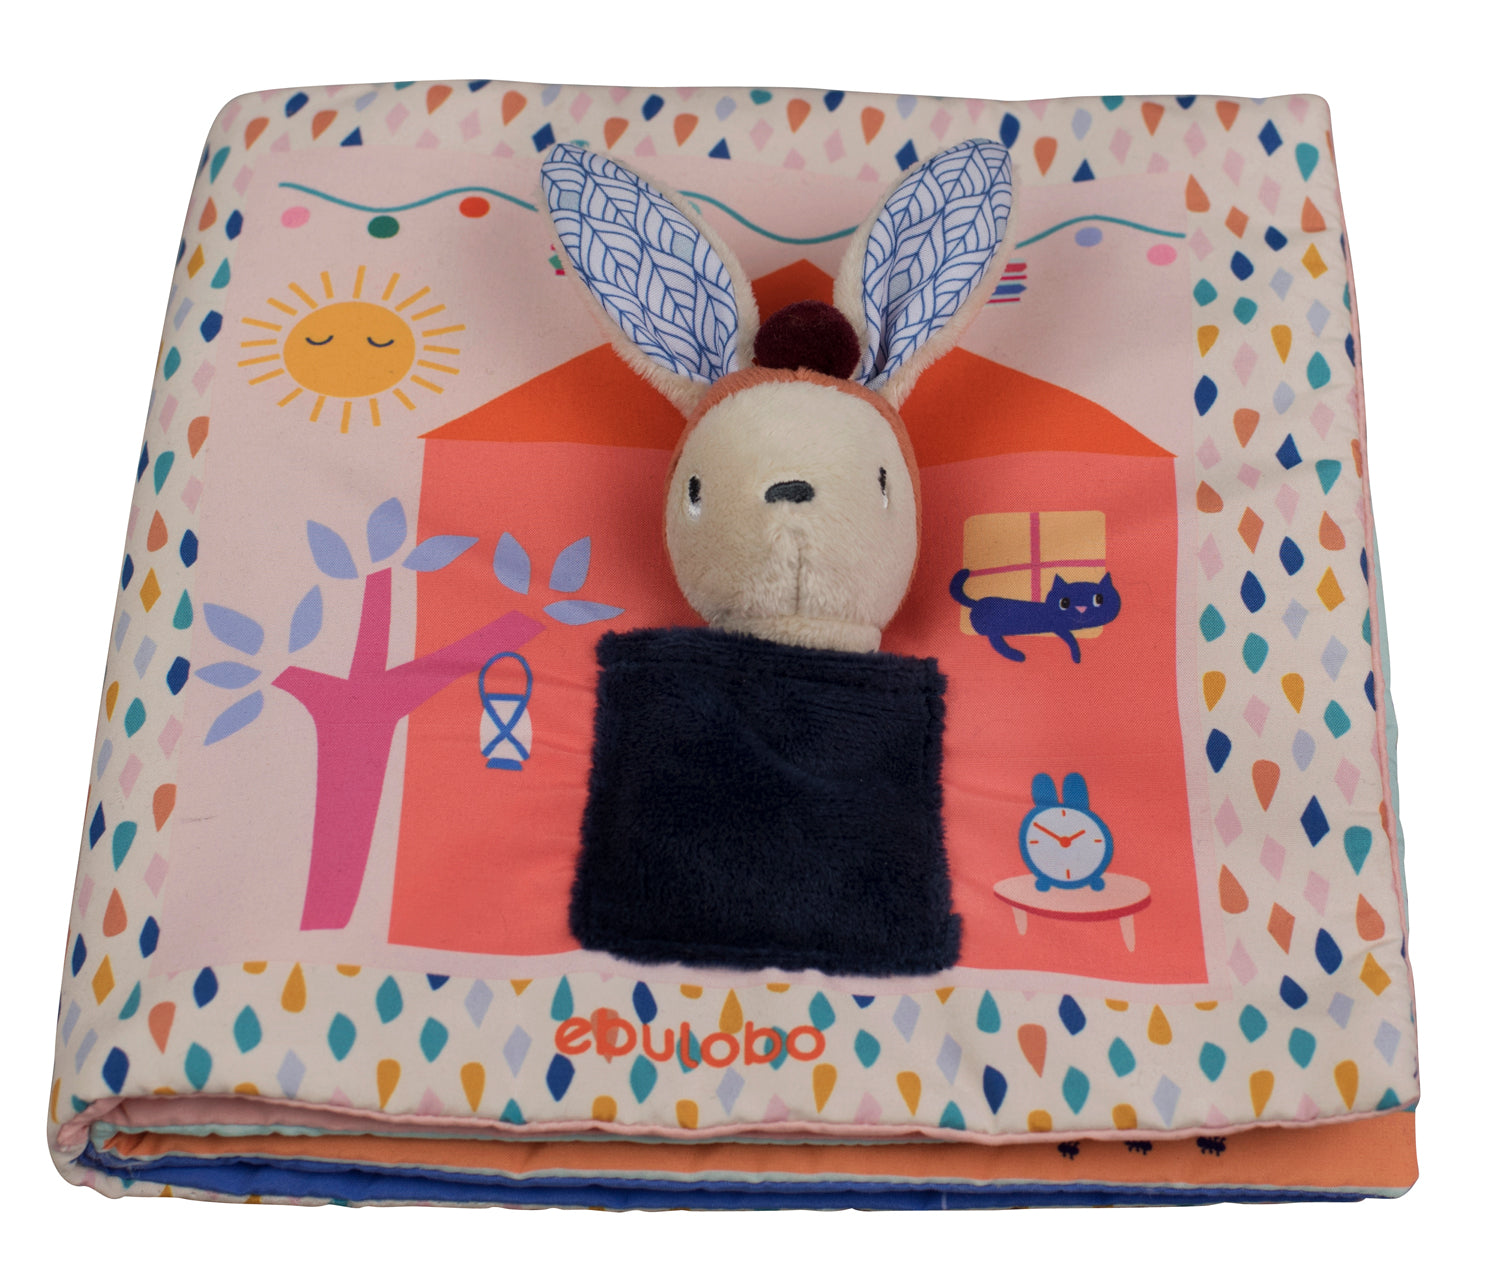 Livre en tissu pour bébé racontant l'histoire d'un petit lapin nommé Gabin et de ses amis. Sur la couverture, la petite marionnette de Gabin se repose dans son lit. 